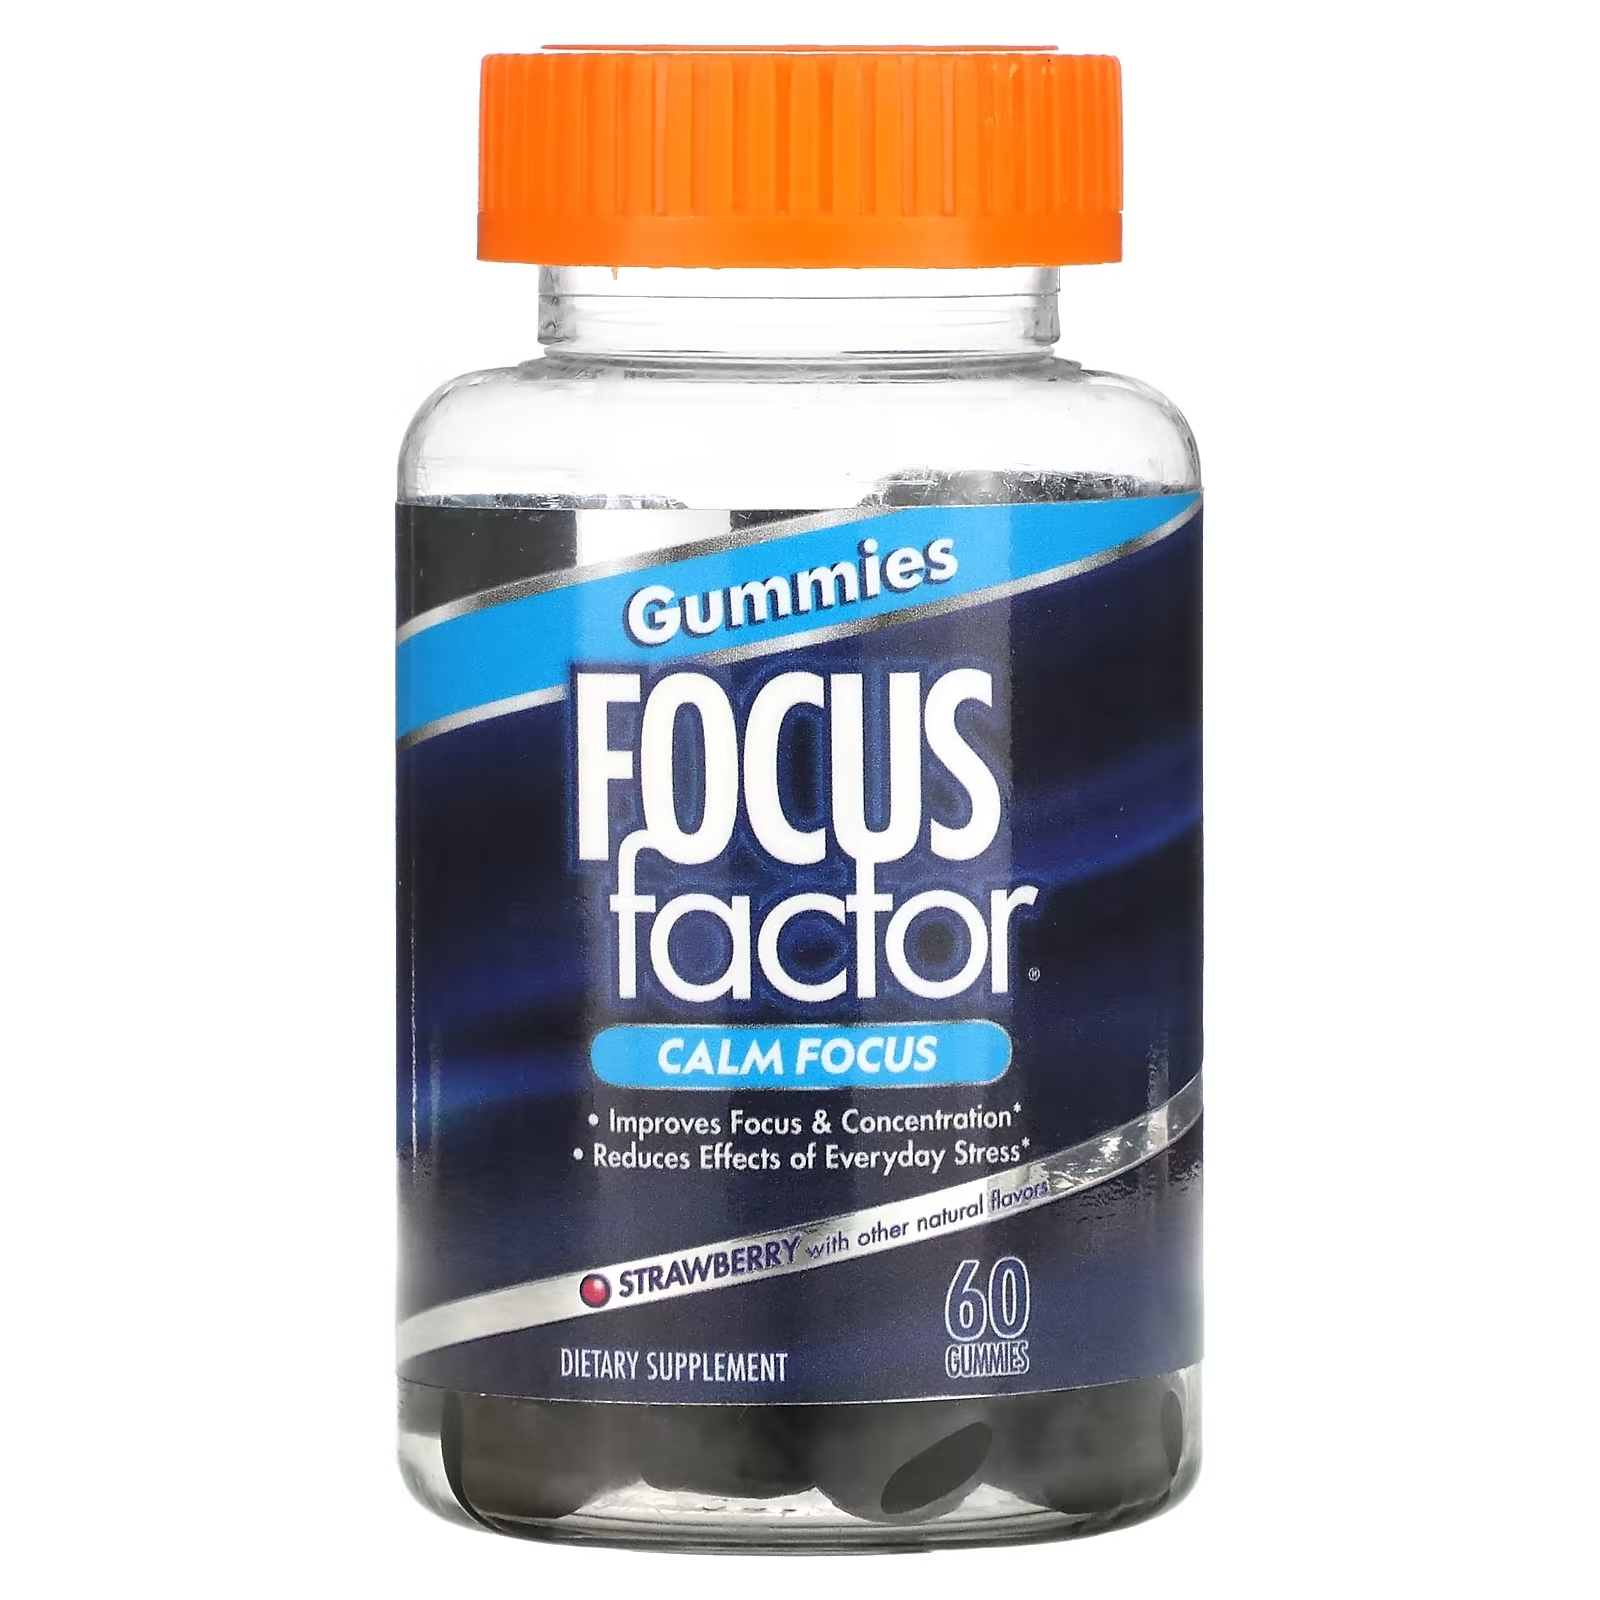 Focus Factor Calm Focus клубника, 60 жевательных таблеток focus factor extra strength 60 таблеток